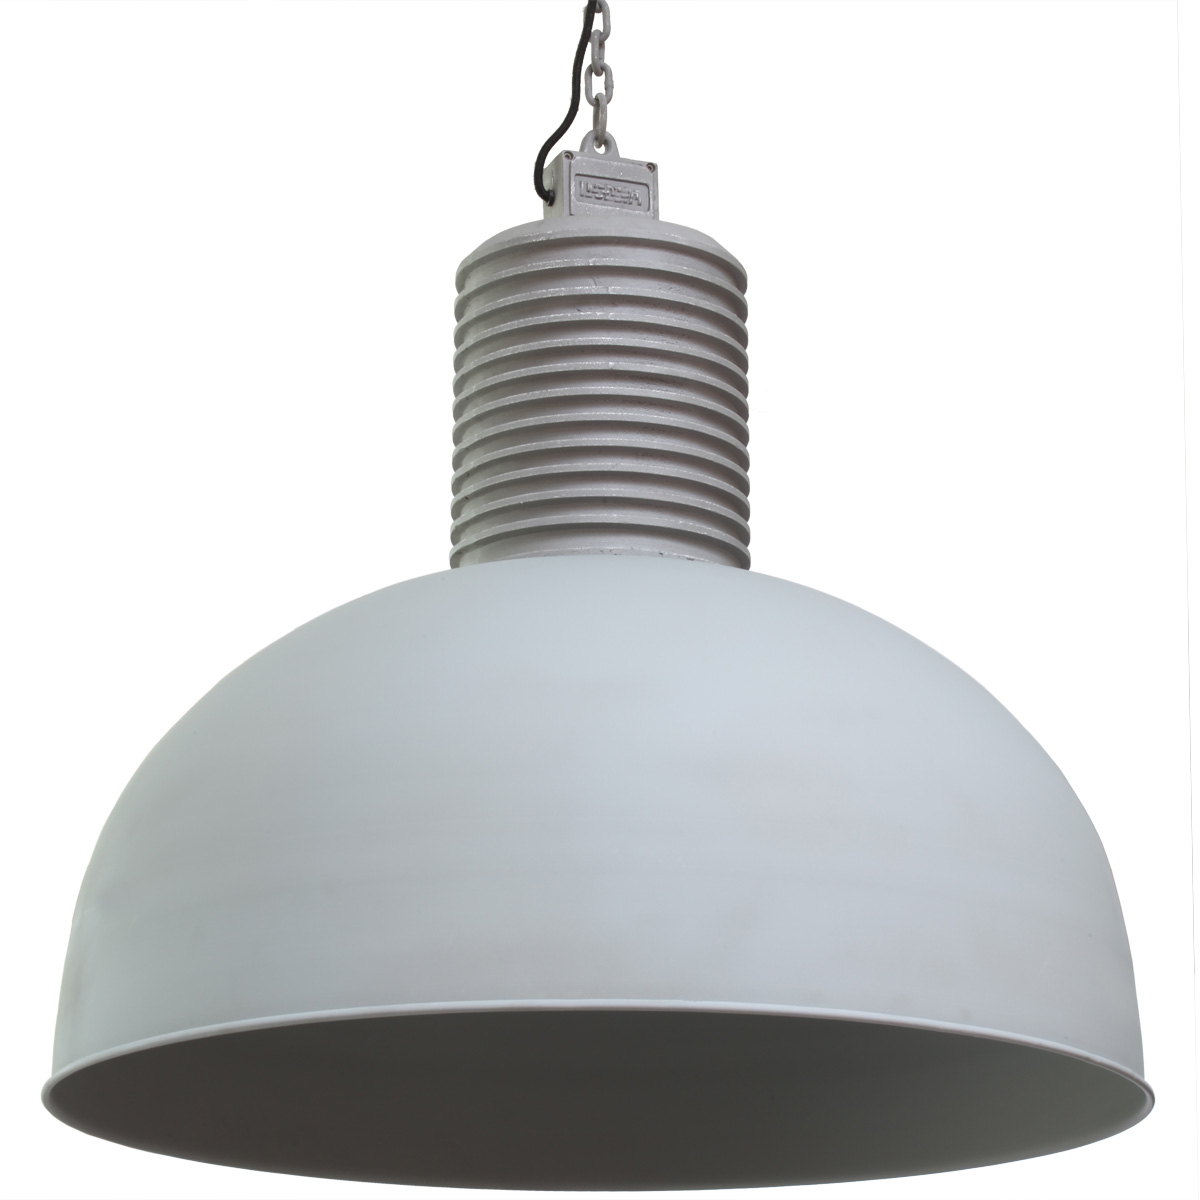 XXL Hängeleuchte Industrie Industrielampe Loft Lampe Deckenleuchte Alu alt LED 